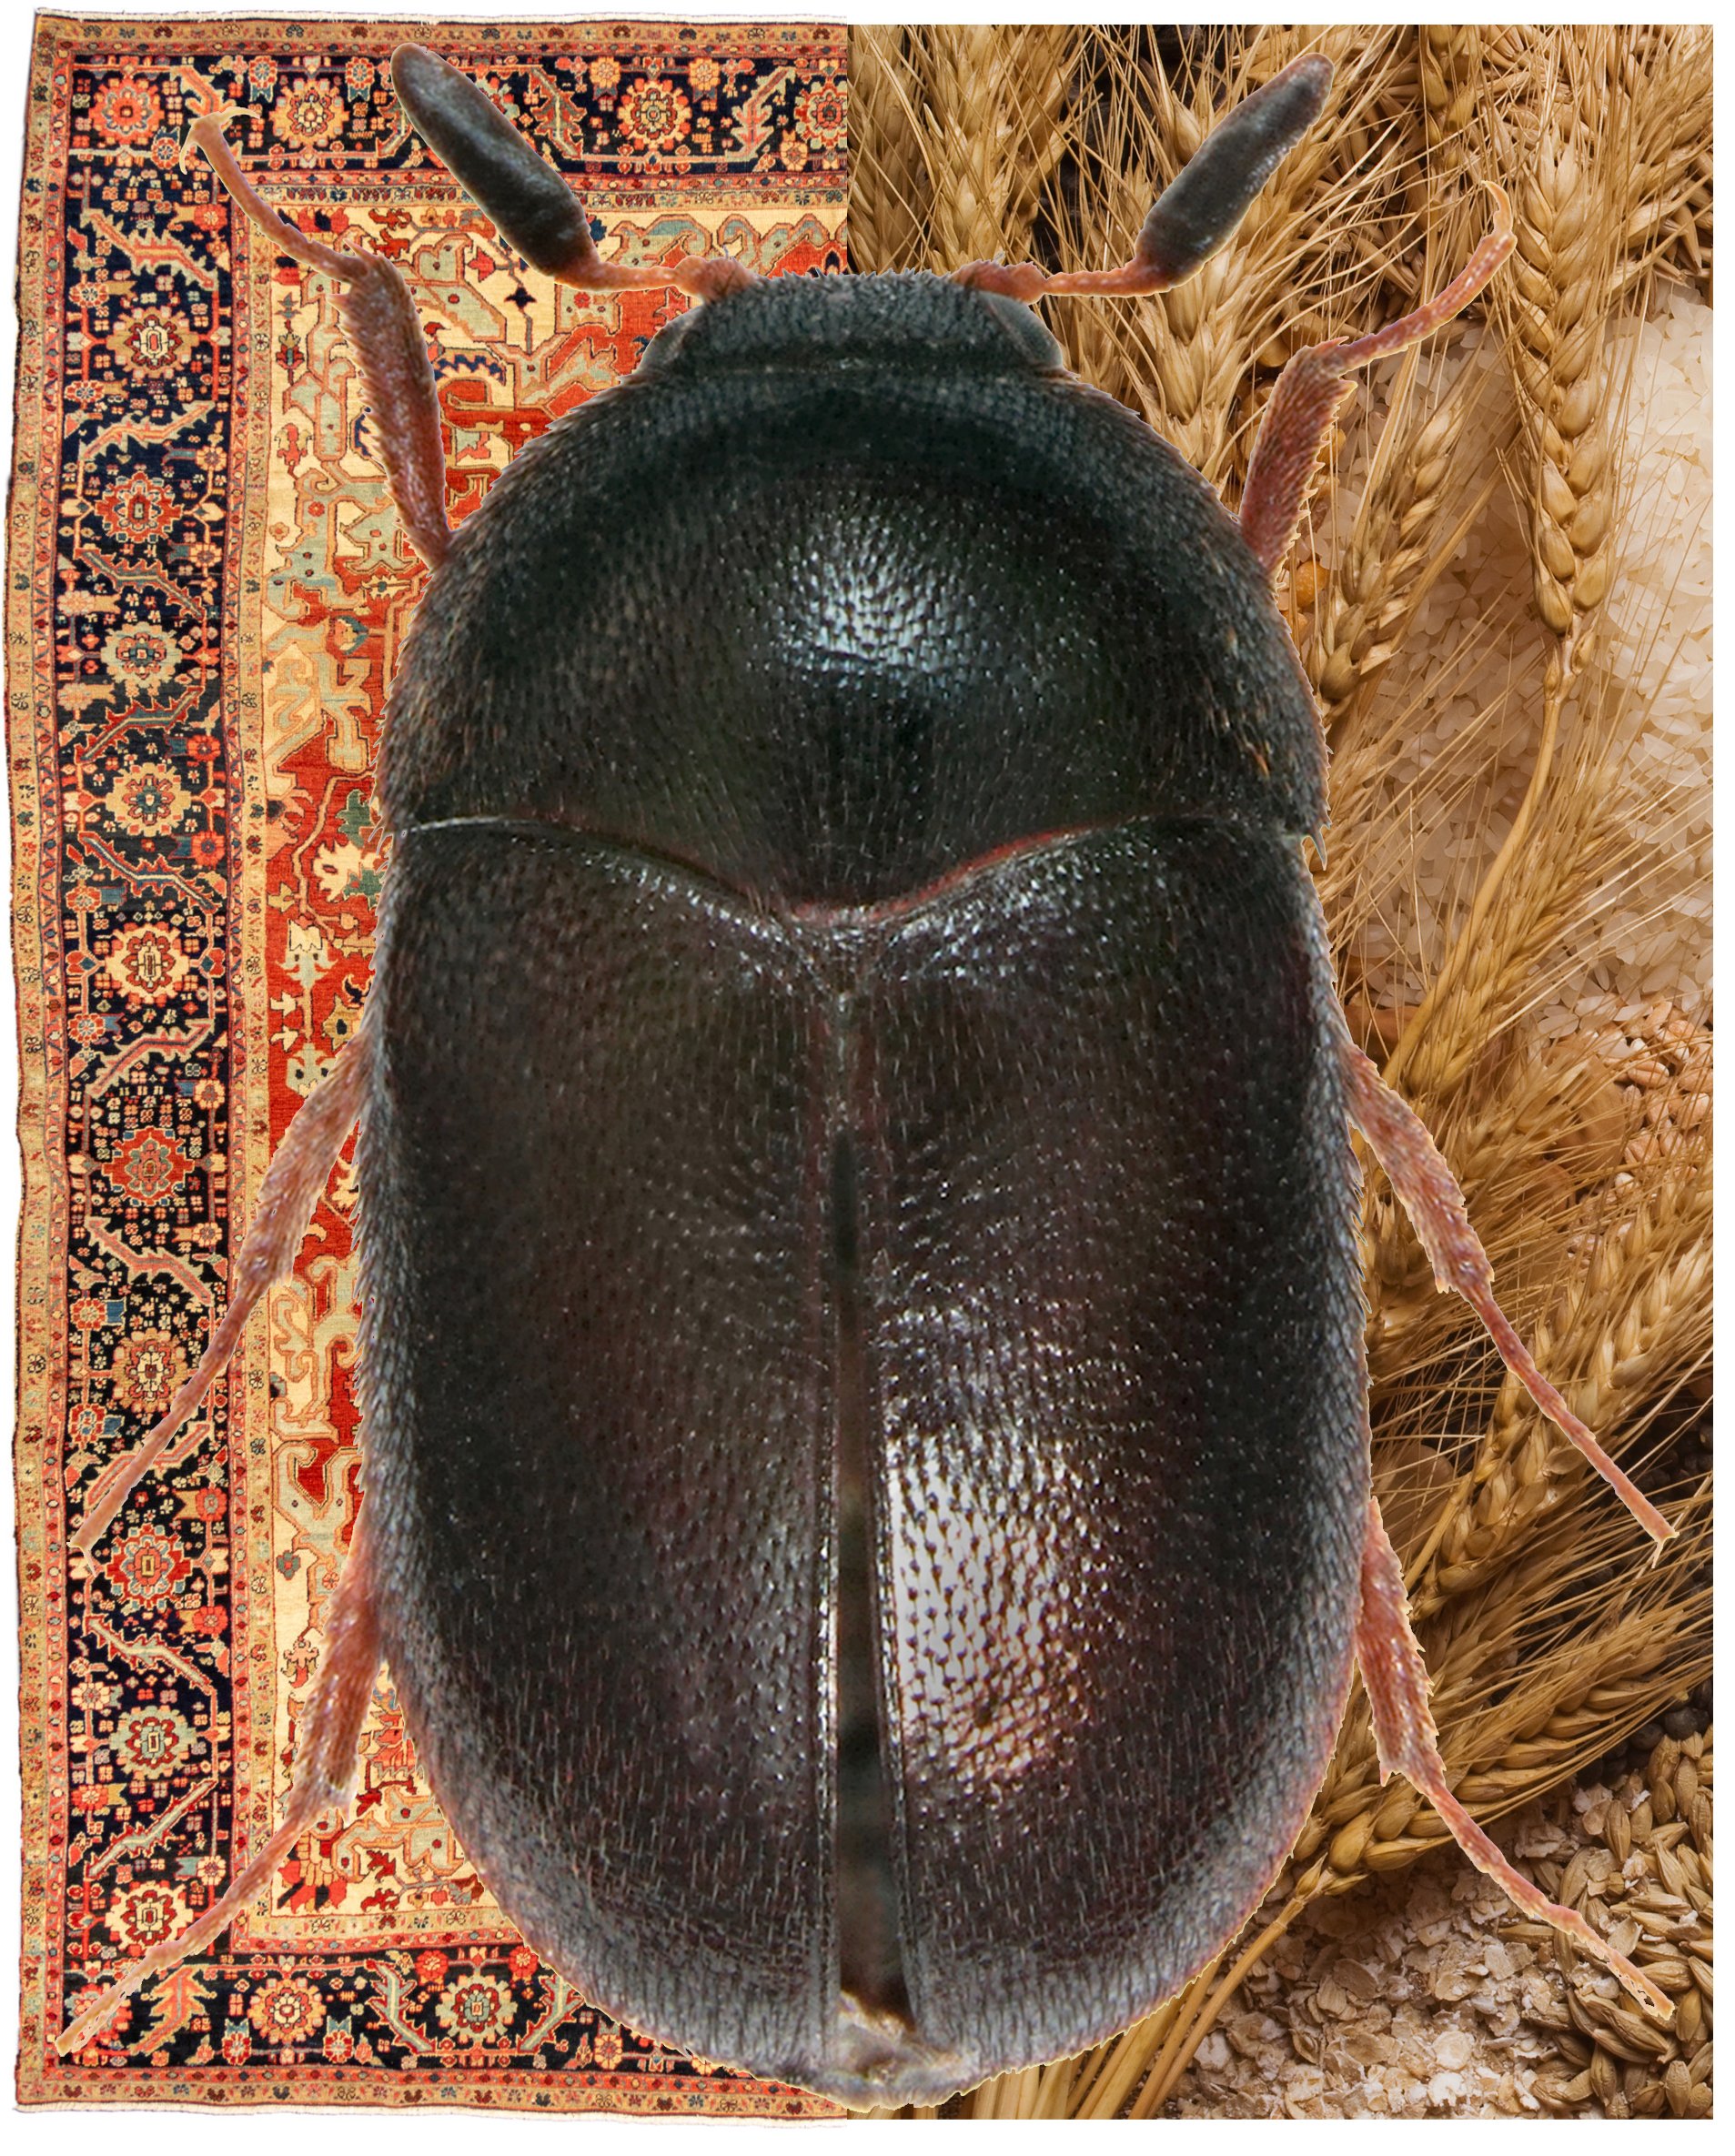 black carpet beetle - Attagenus unicolor (Brahm)